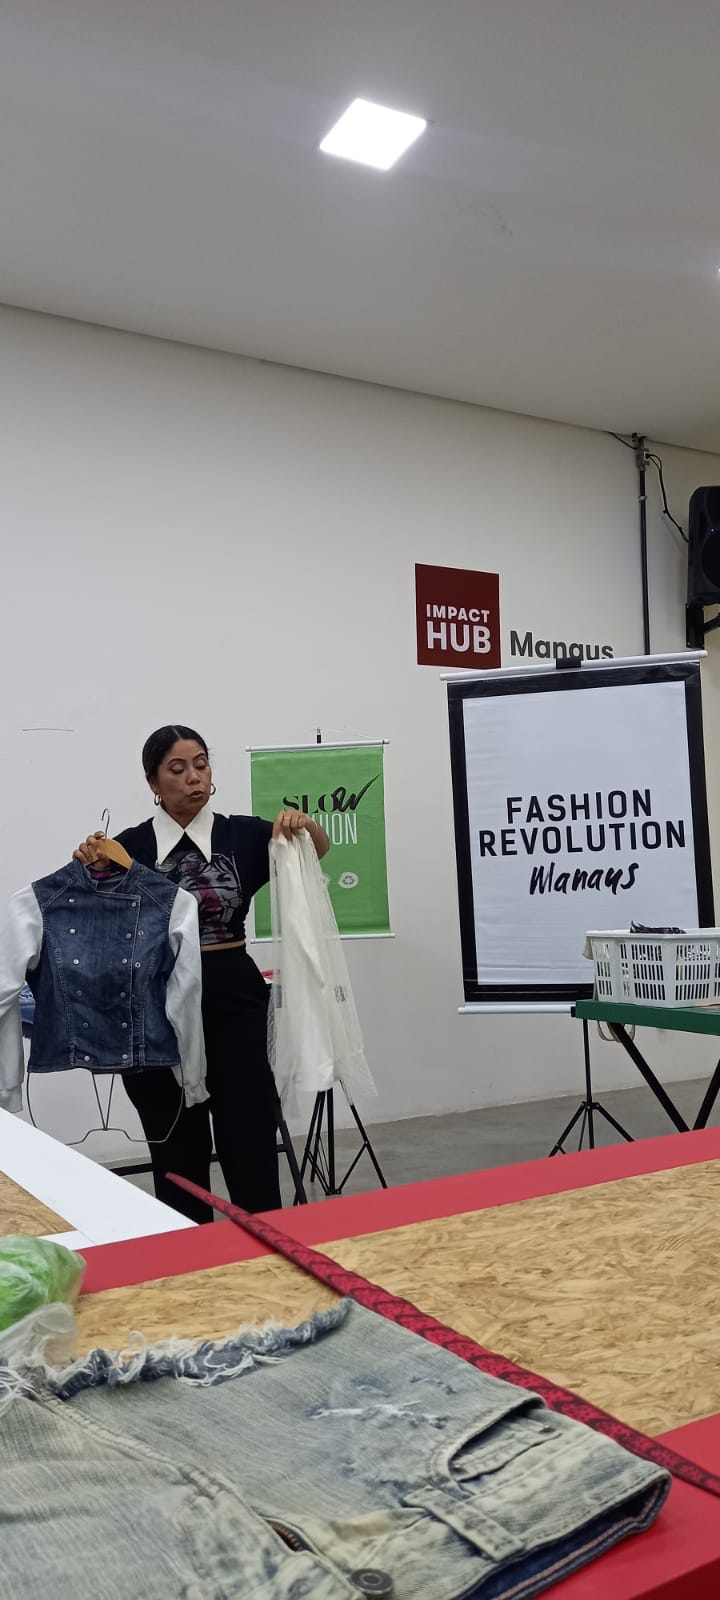 Maior evento ativista de moda do mundo, o Fashion Revolution lança